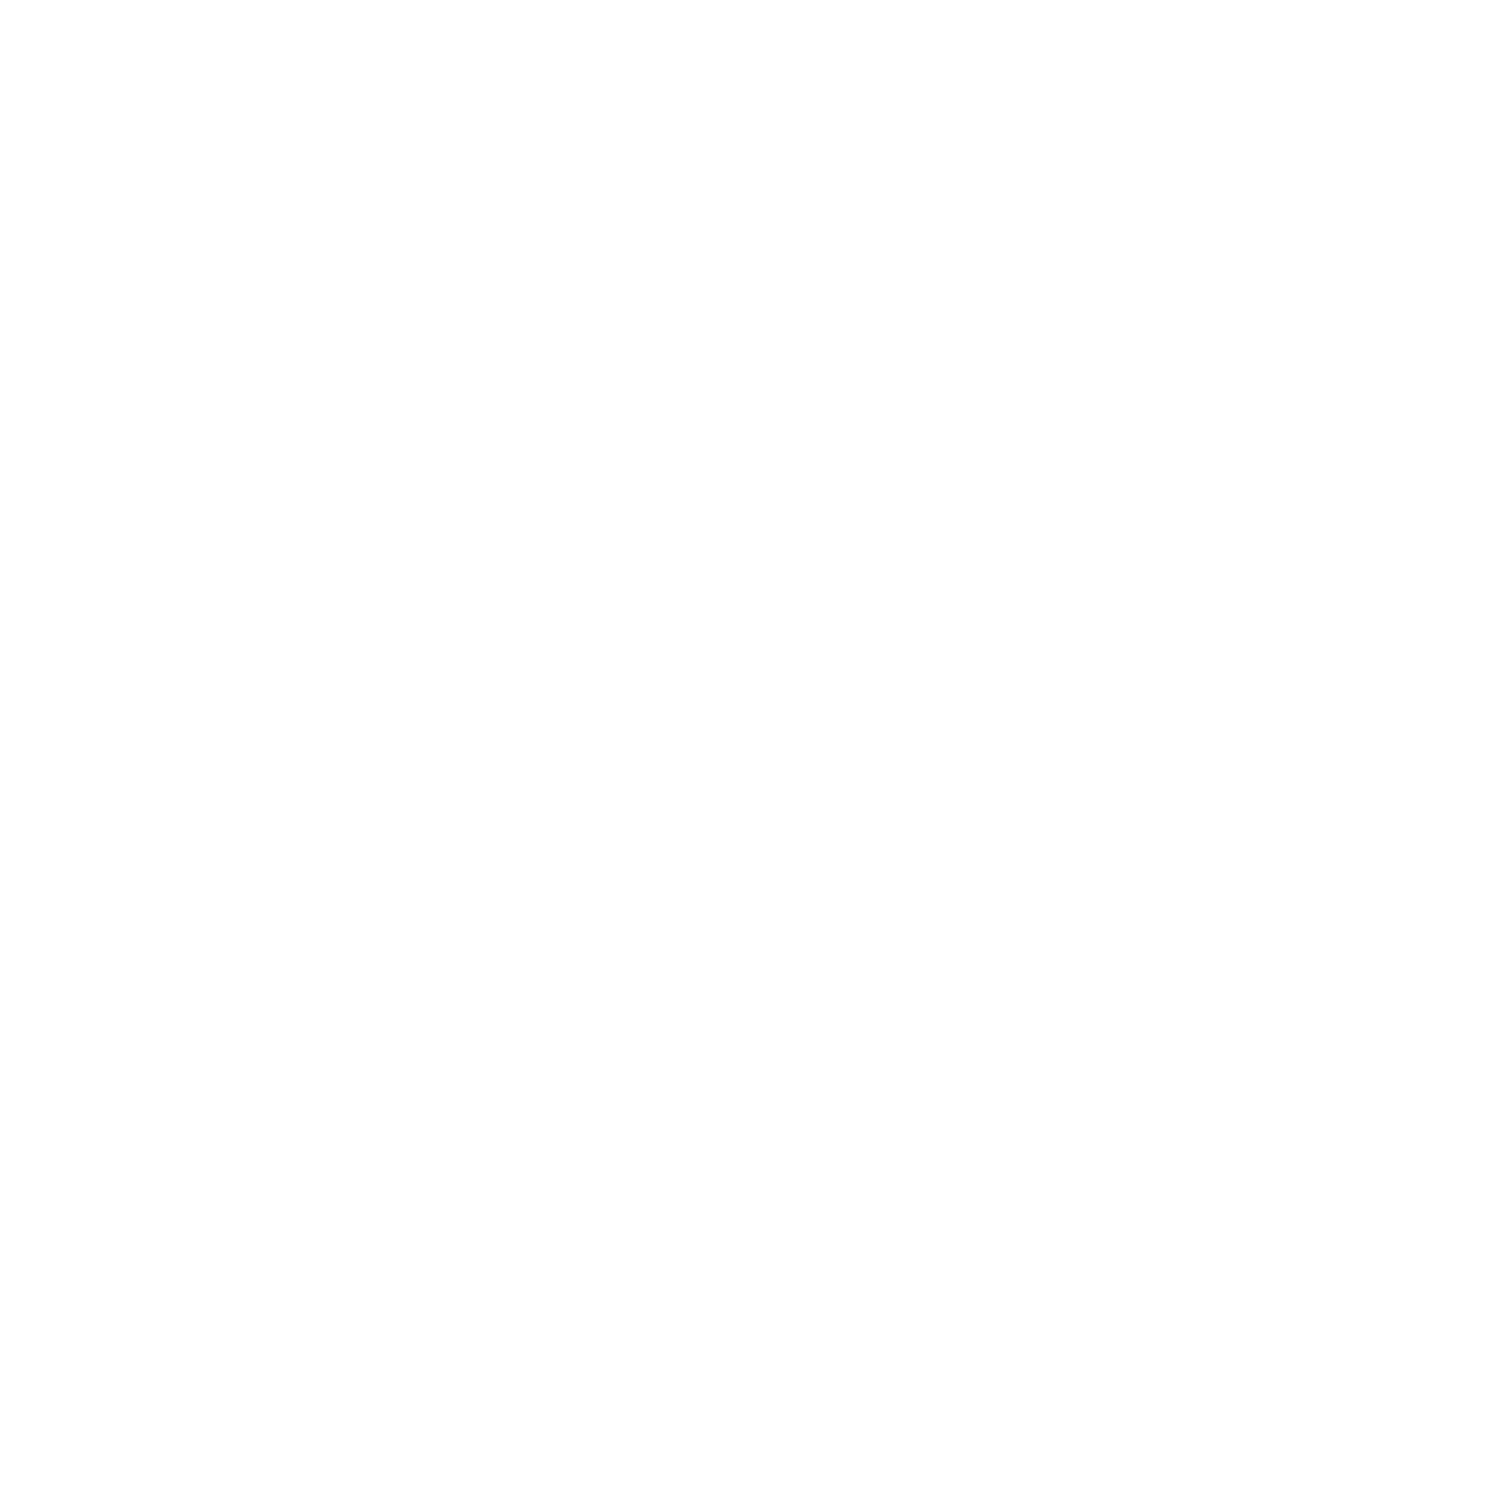 QRMenu Pro